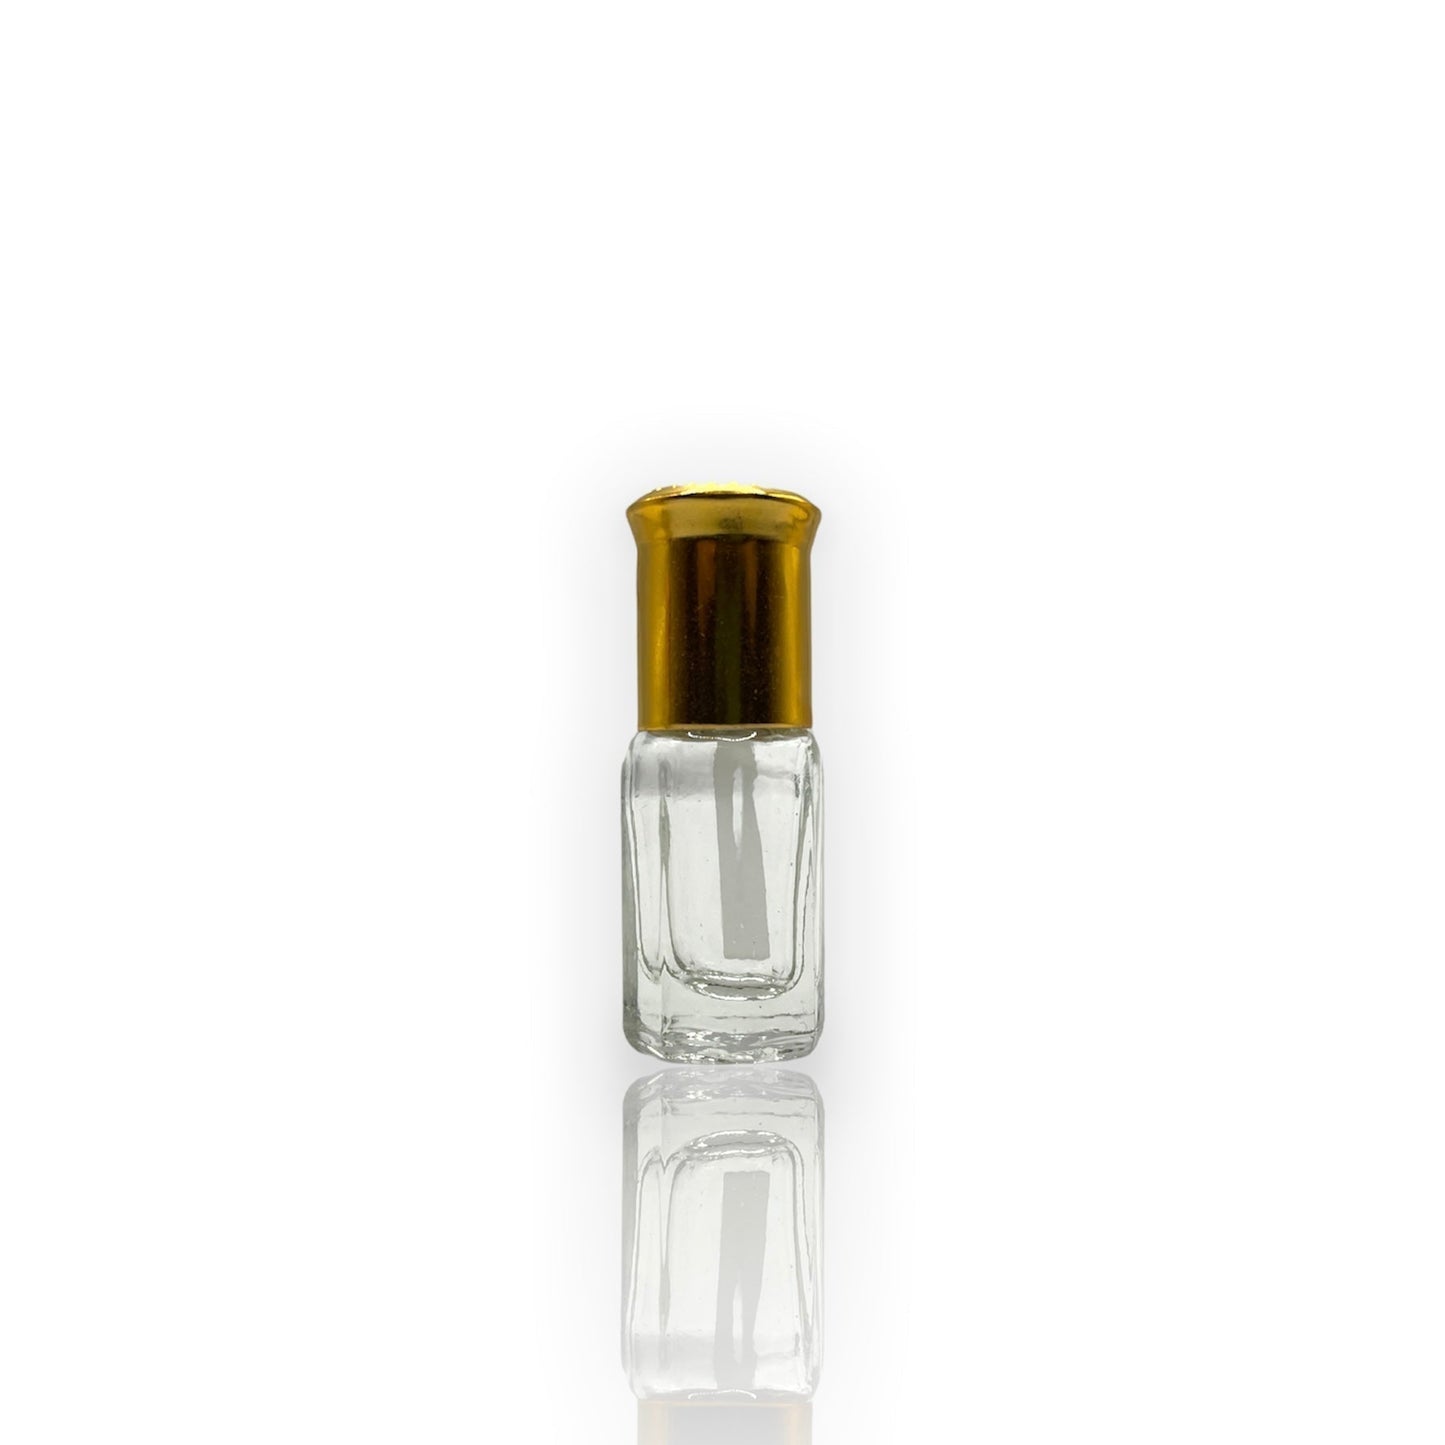 N-01 Öl Parfüm *Inspiriert Vanille